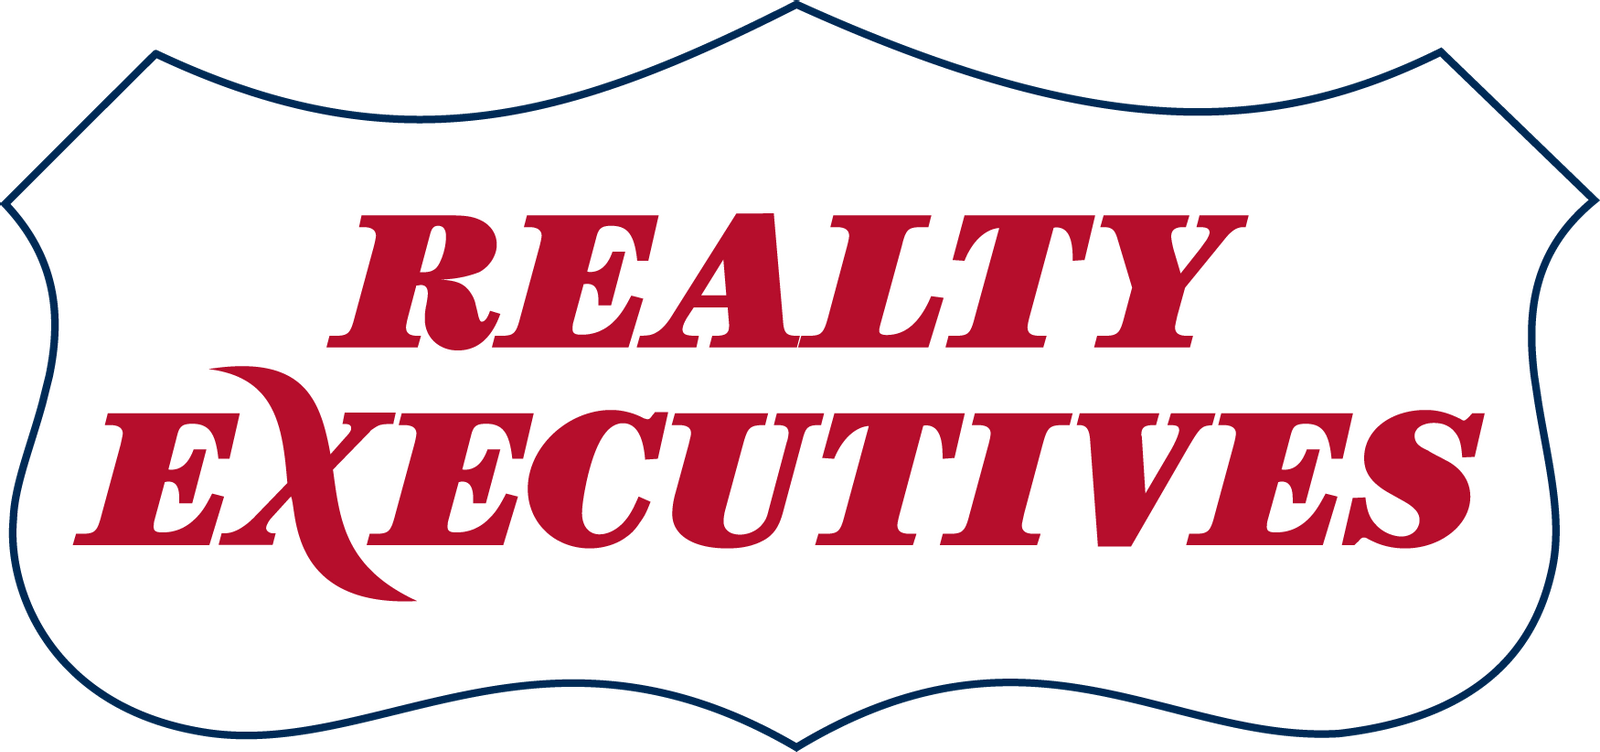 Realty Executives Focus